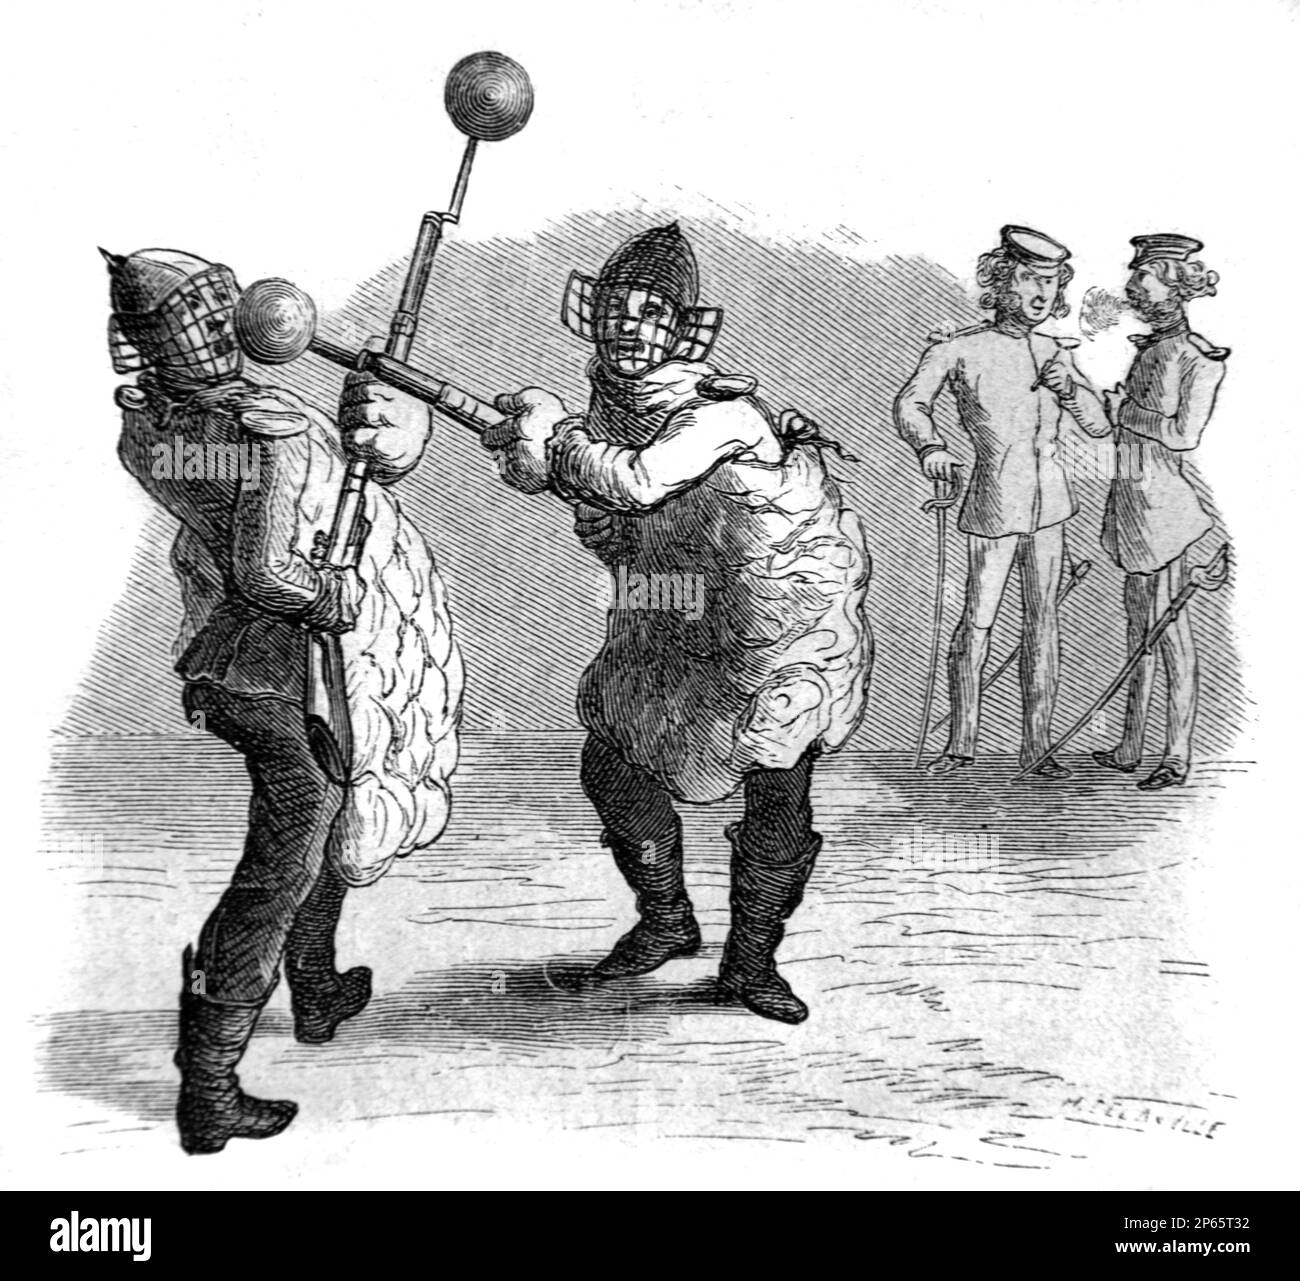 Les premiers tireurs pratiquant la clôture avec des baïonnettes protégées par des boules de caoutchouc Munich Allemagne. Gravure ancienne ou illustration 1862 Banque D'Images